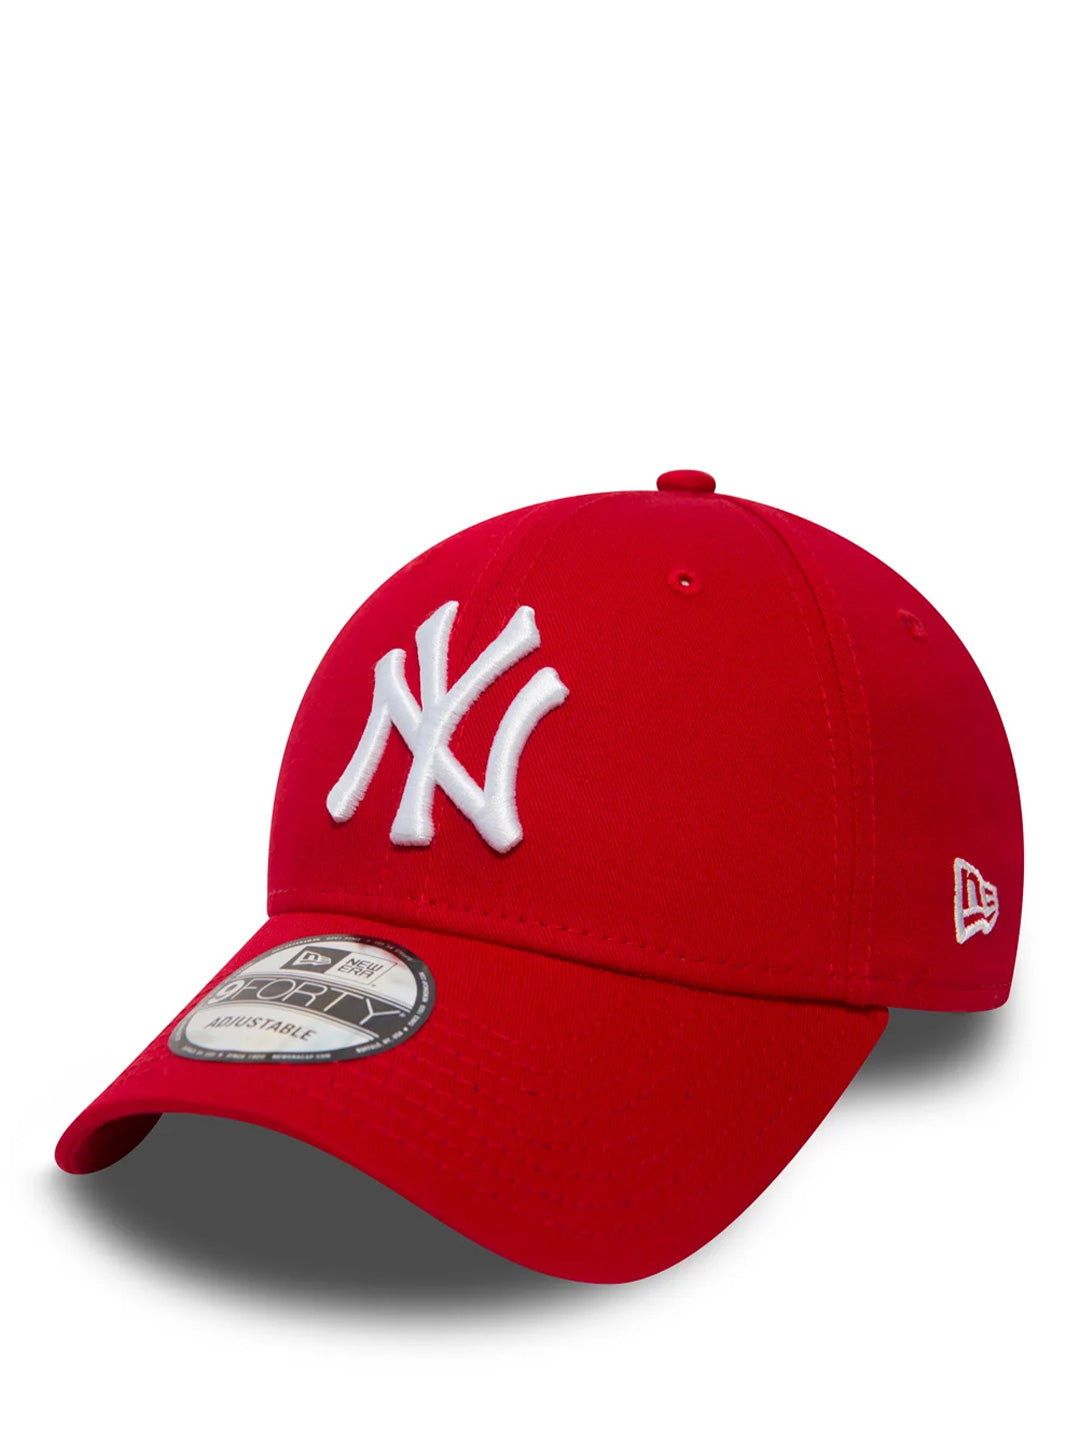 New Era 9FORTY cappello rosso con logo bianco